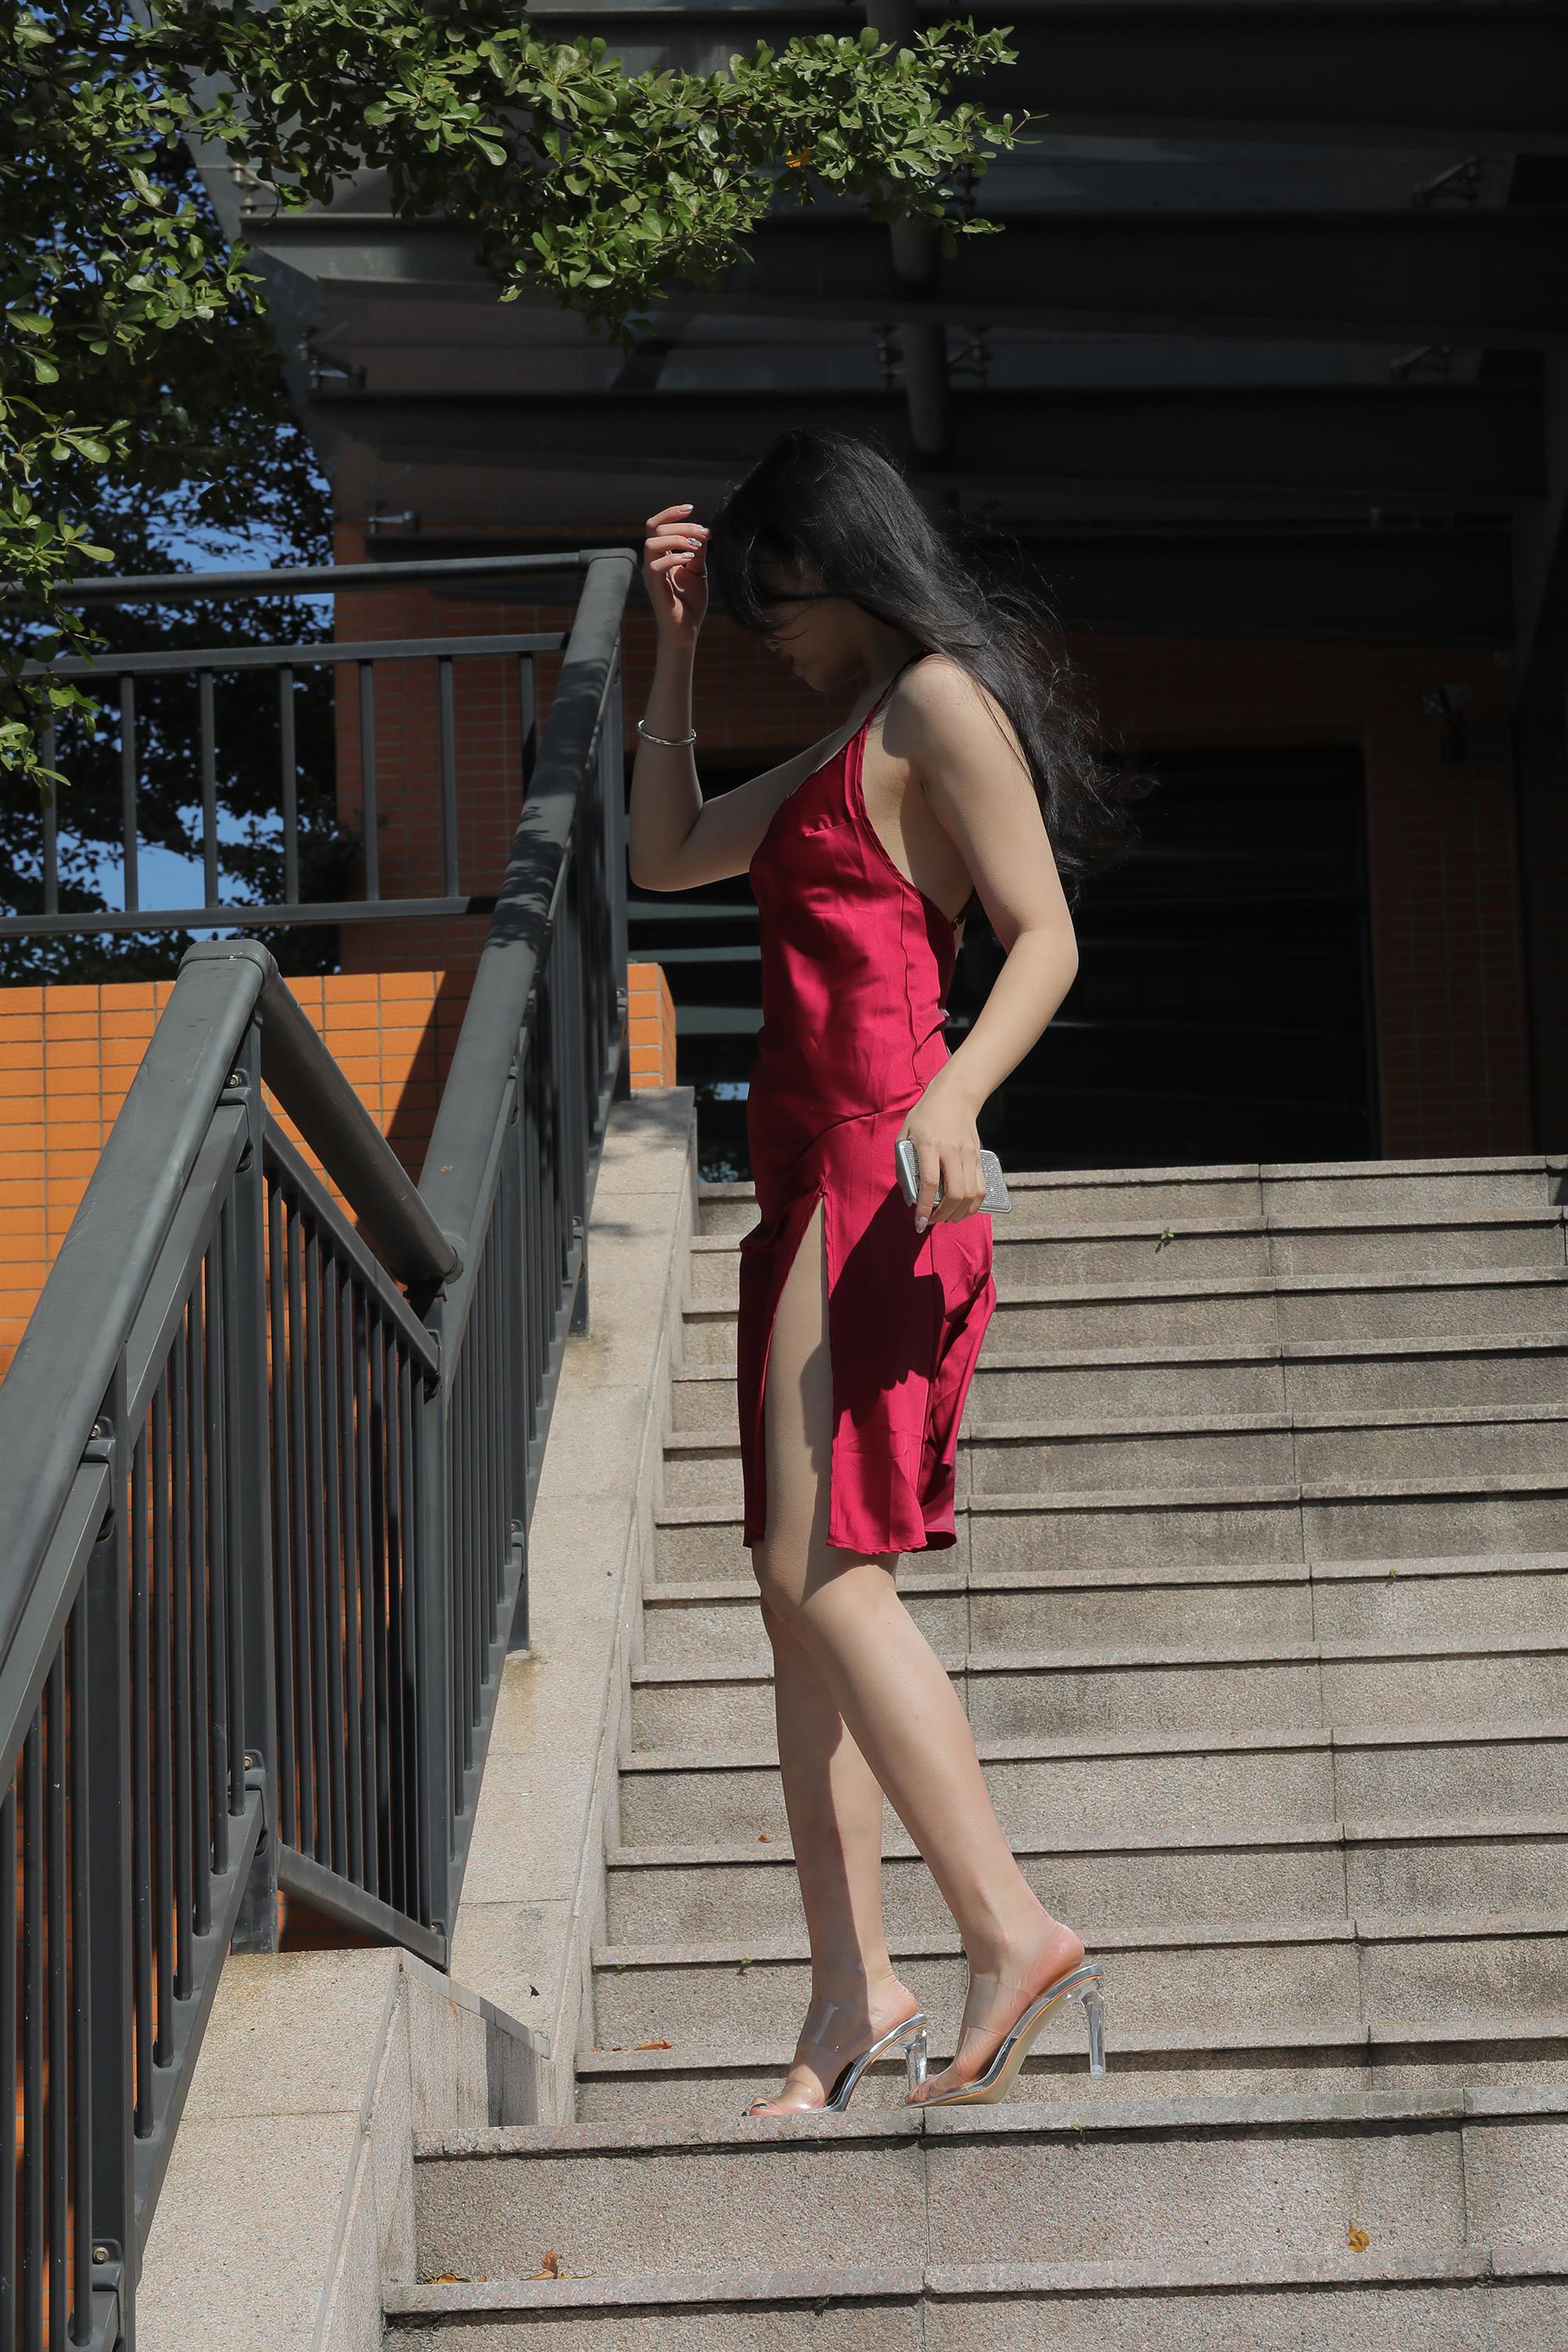 Street beauty in a red dress - 12.jpg